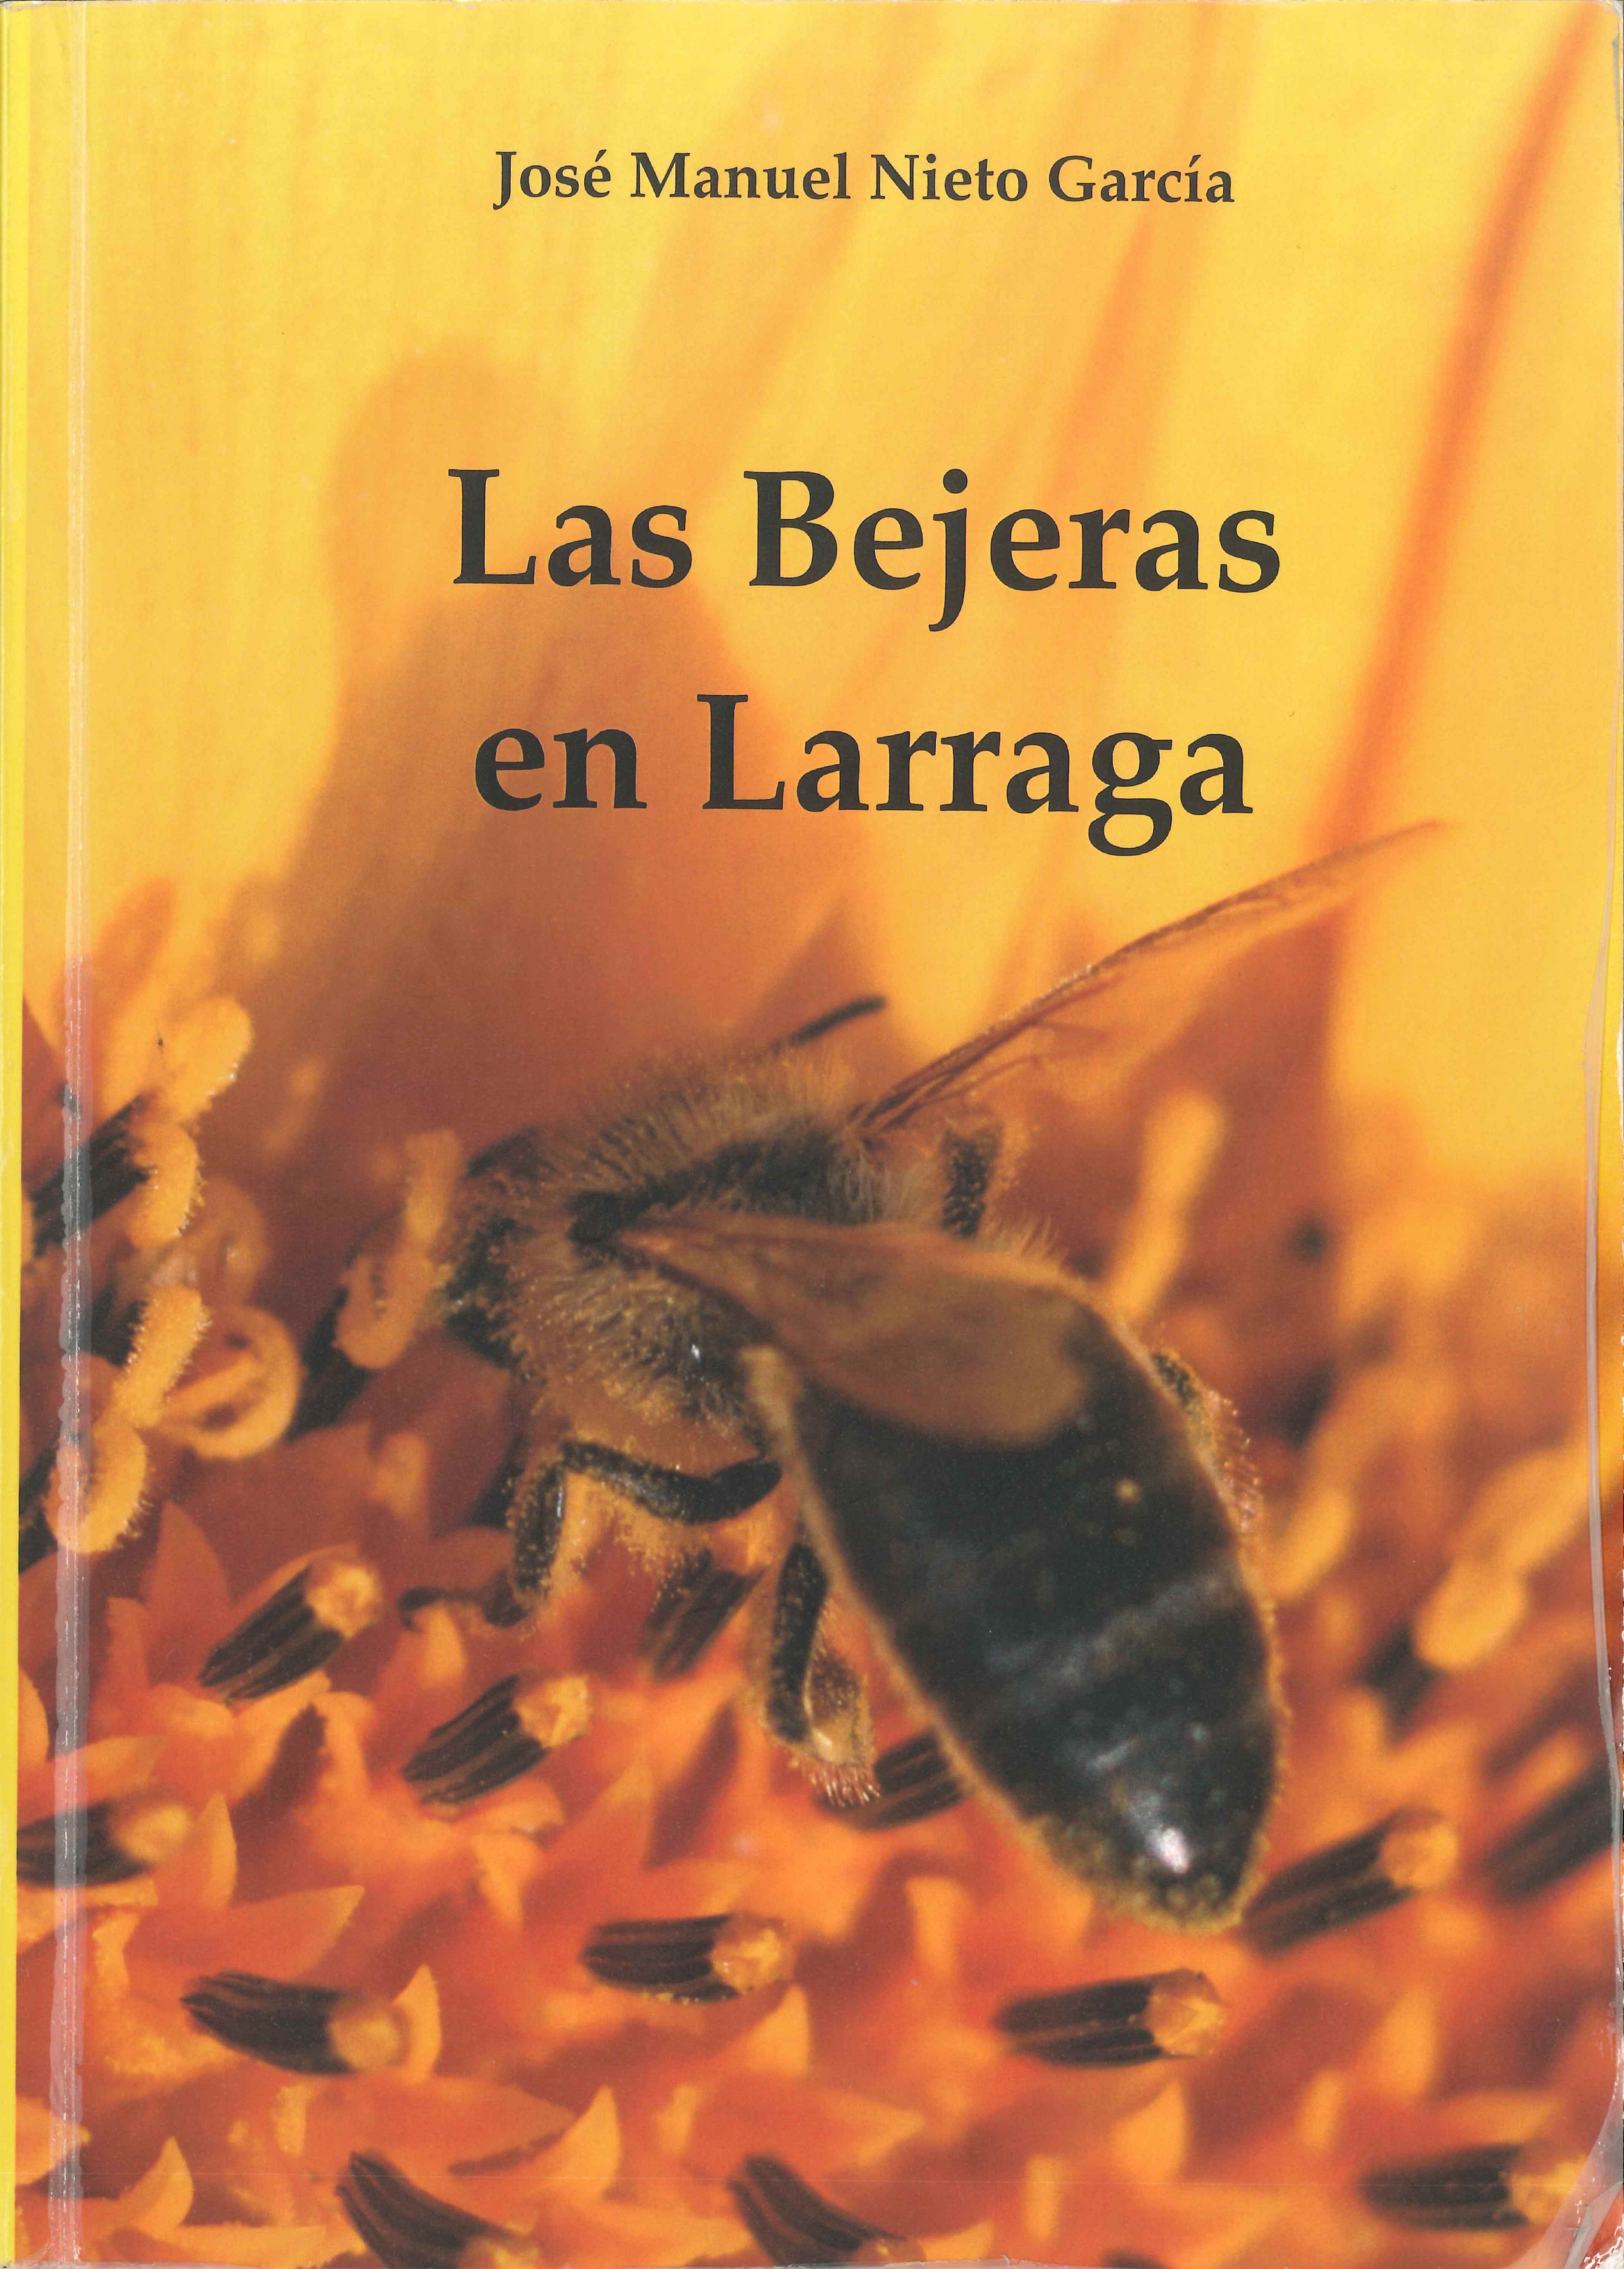 Portada Libro “Las Bejeras en Larraga”, escrito por Juan Manuel Nieto García